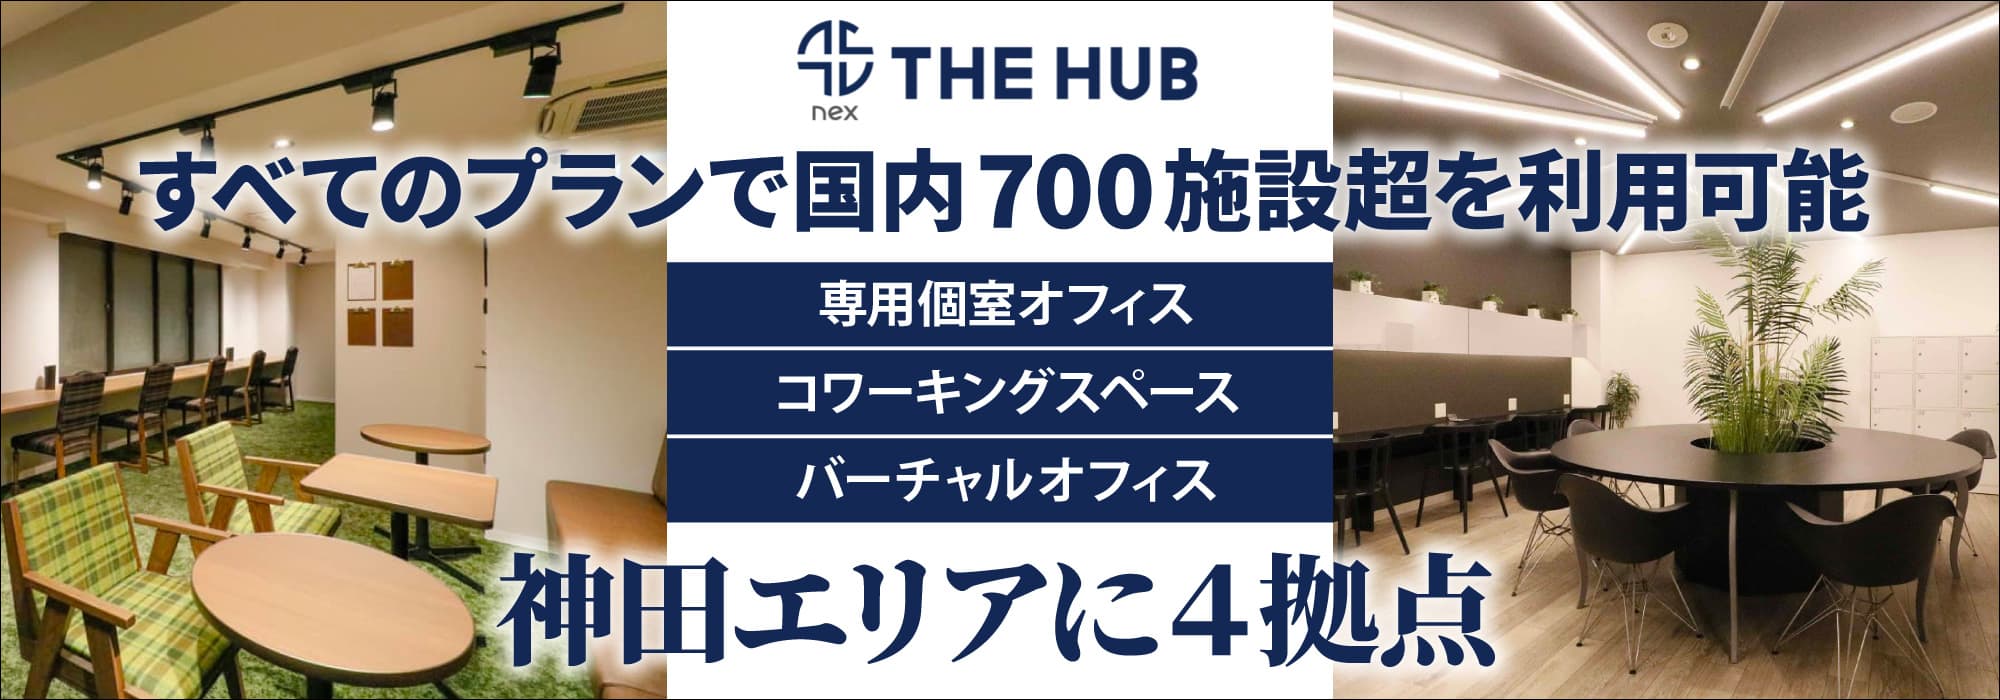 神田エリアに４拠点、創造力と生産性を刺激するレンタルオフィス【THE HUB】すべてのプランで国内773施設を利用可能